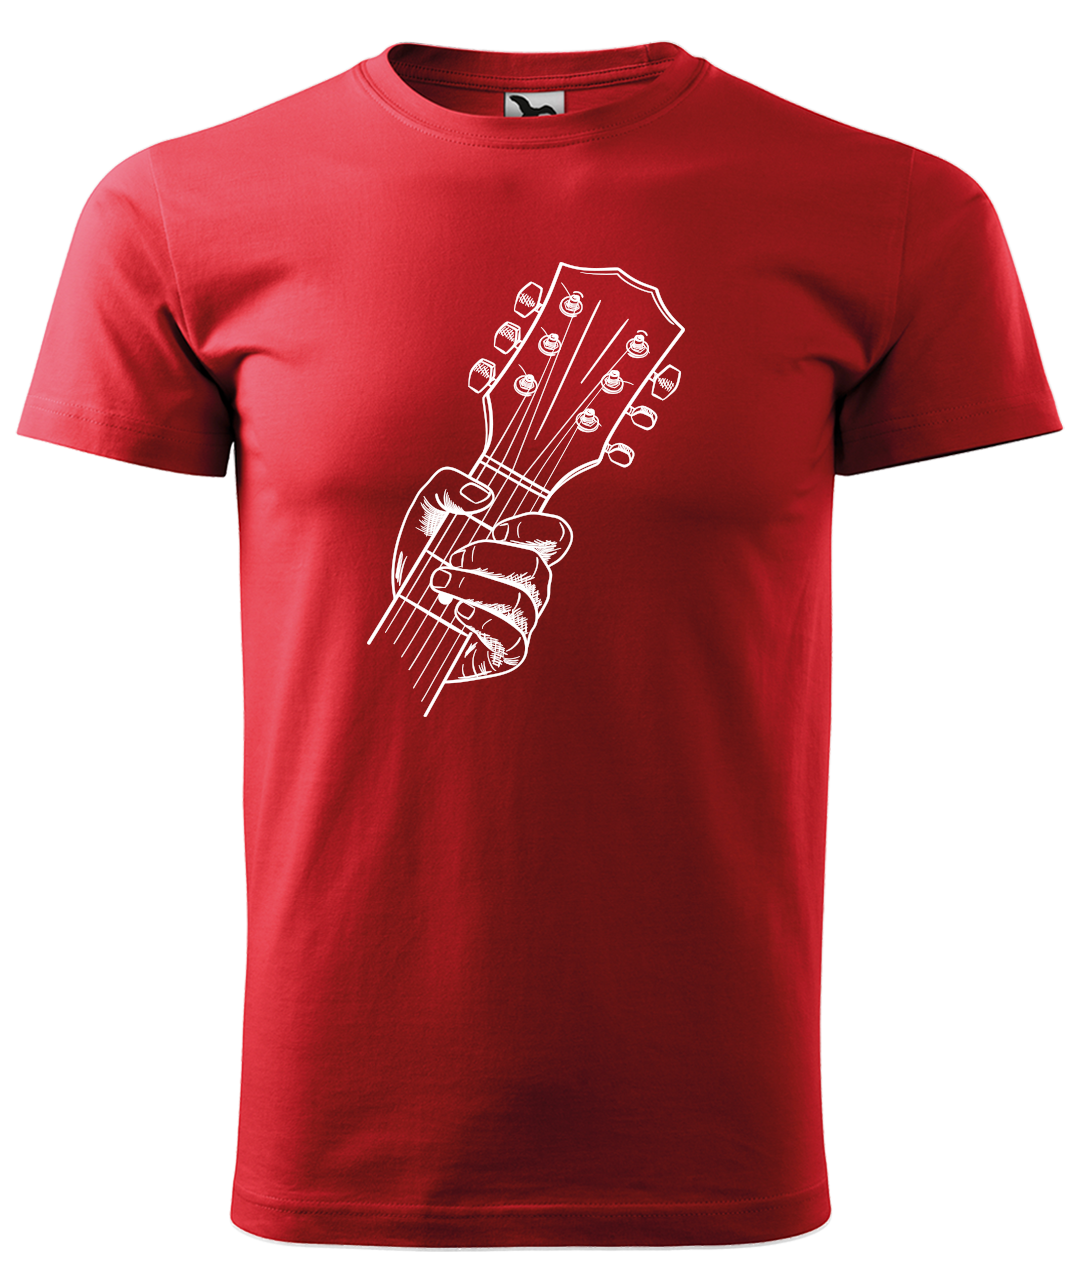 Dětské tričko s kytarou - Hlava kytary Velikost: 6 let / 122 cm, Barva: Červená (07)